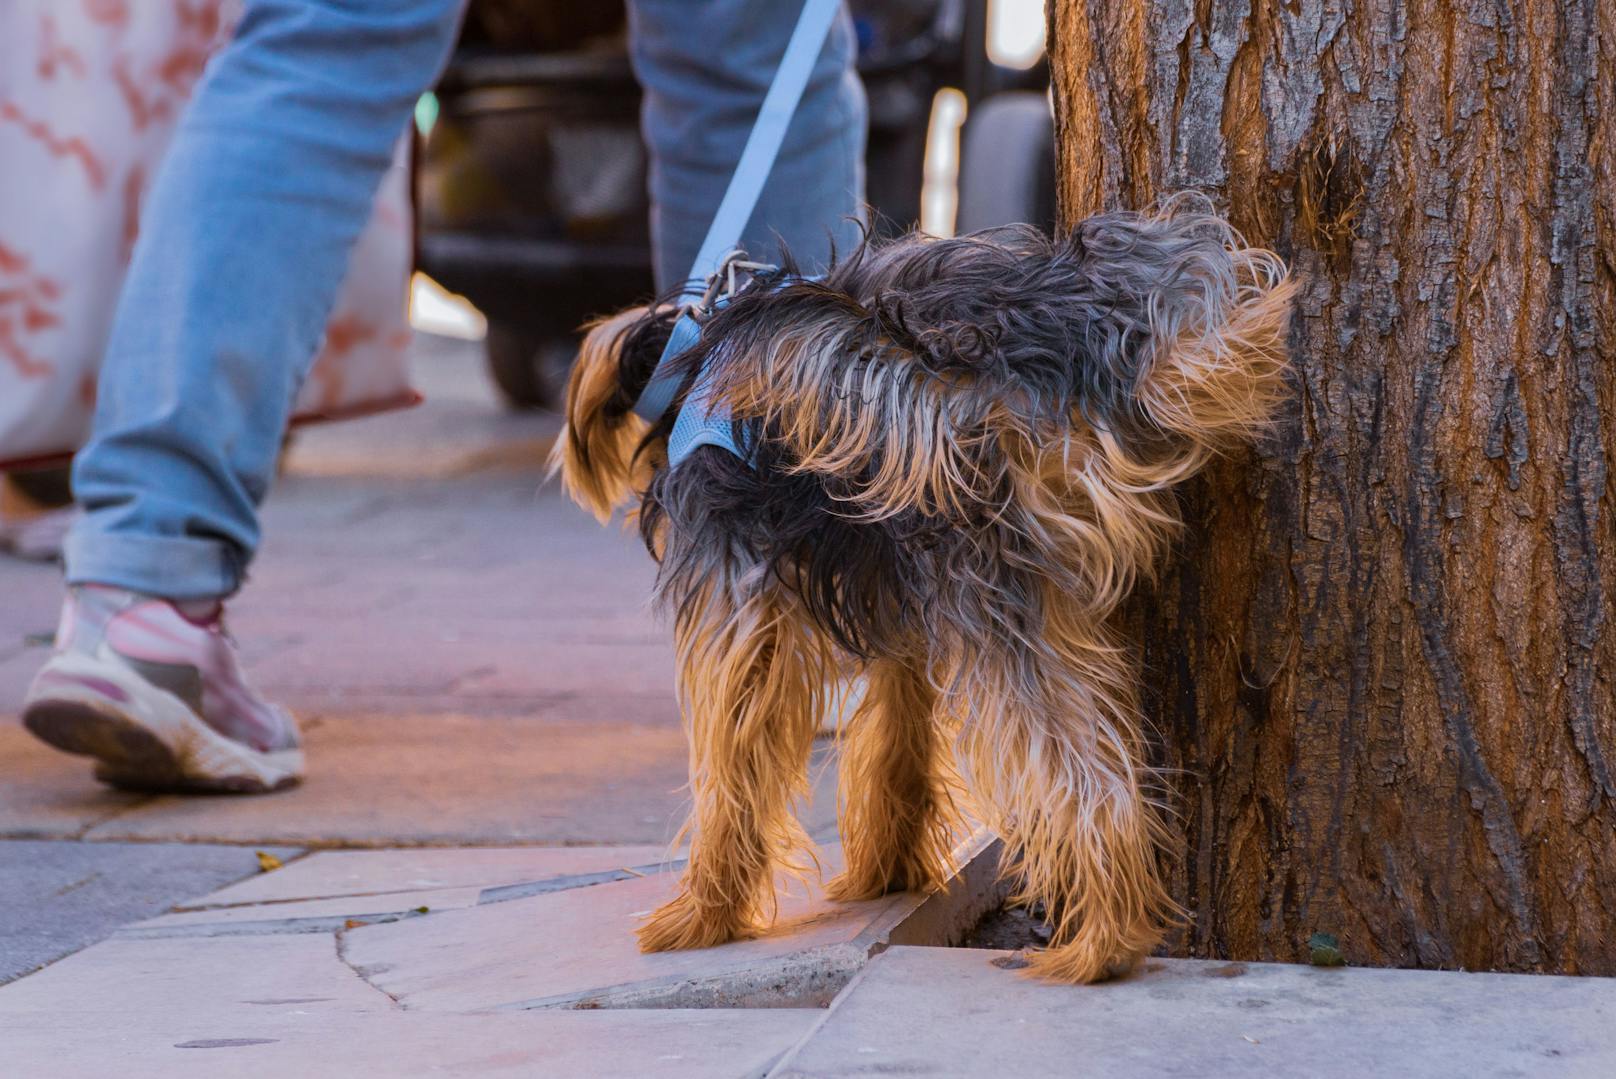 Hund pinkelt vor Lokal – dann rasten Frauen völlig aus